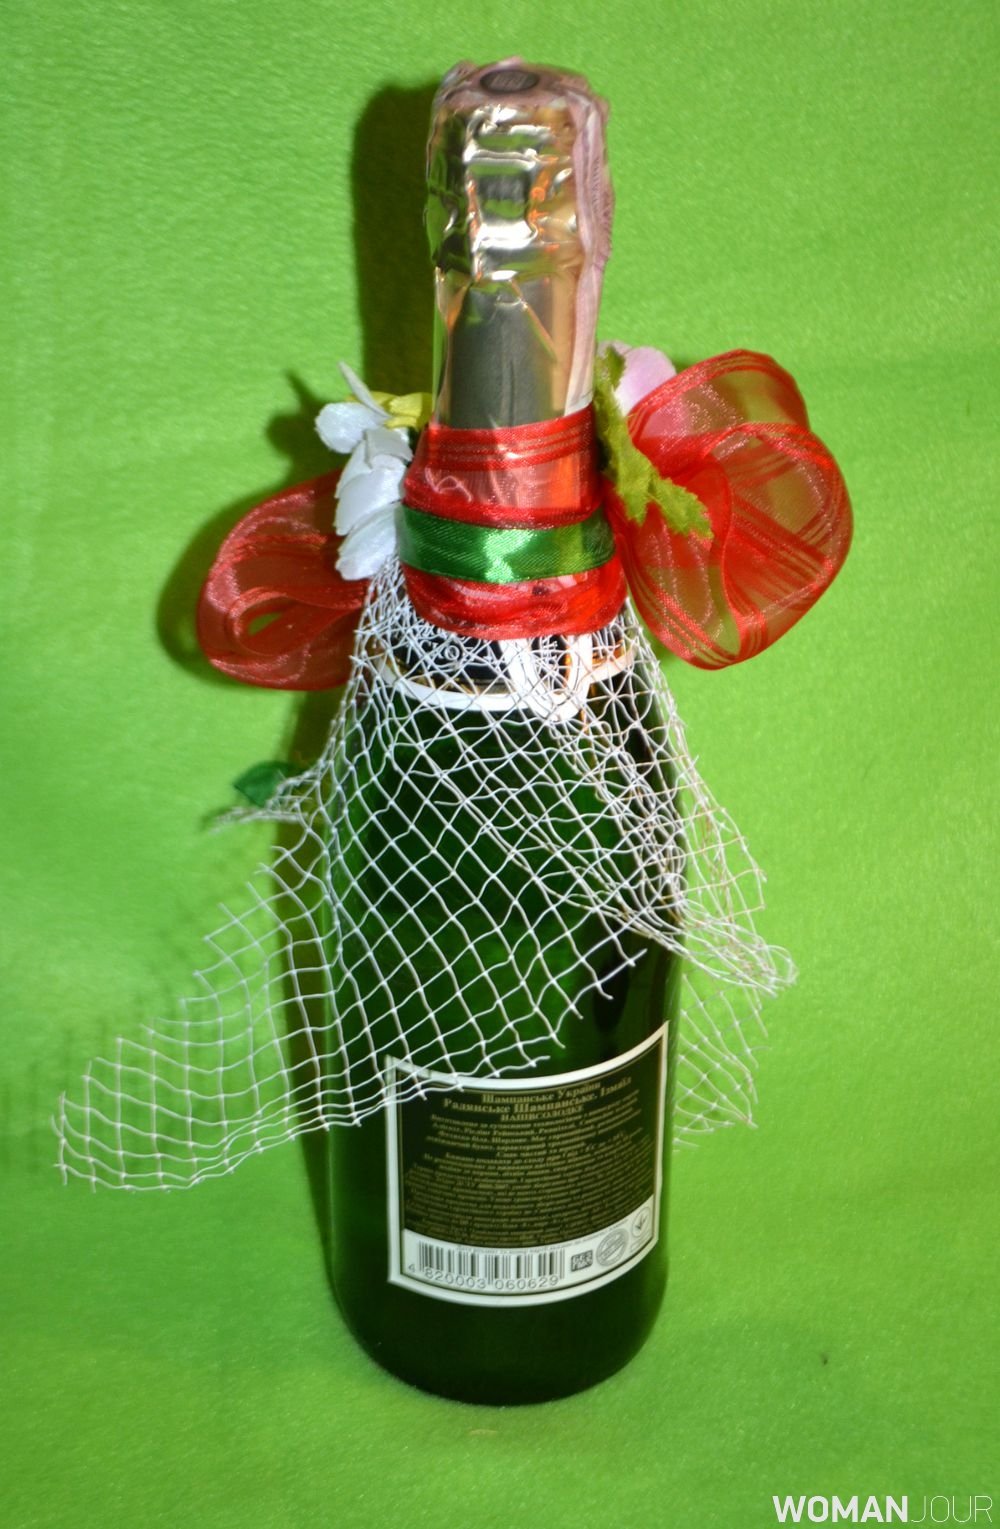 Украшение бутылки шампанского на свадьбу